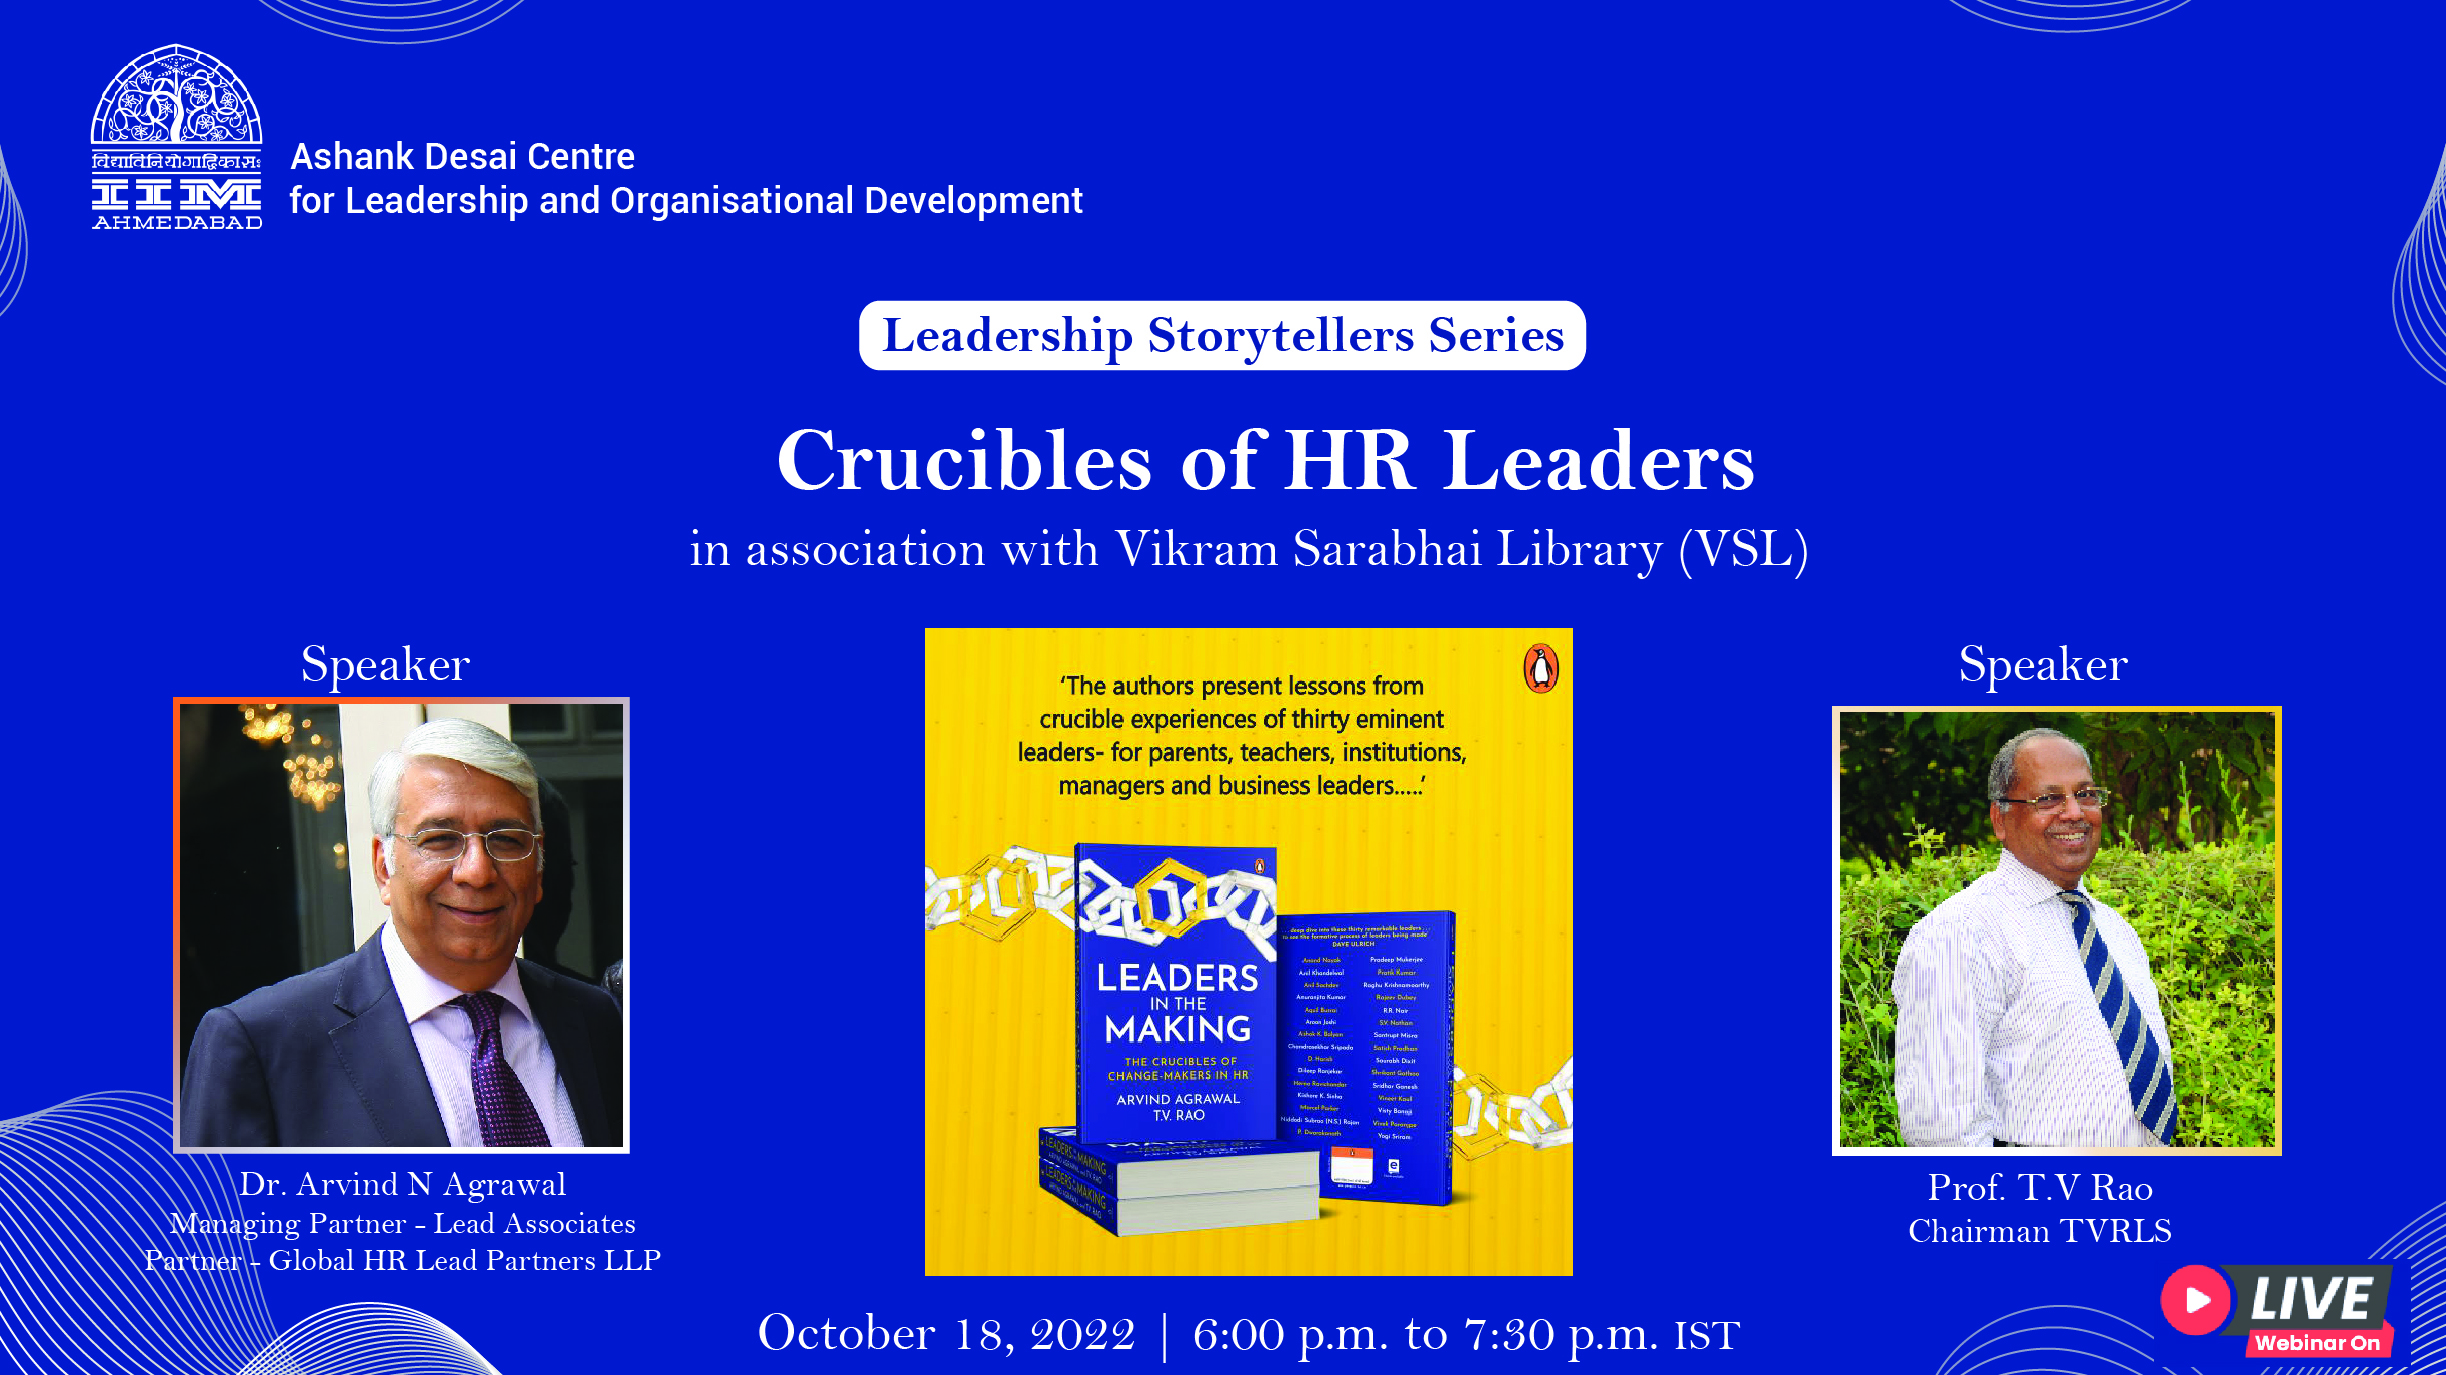 The Leadership Storytellers Series on “Crucibles of HR Leaders”